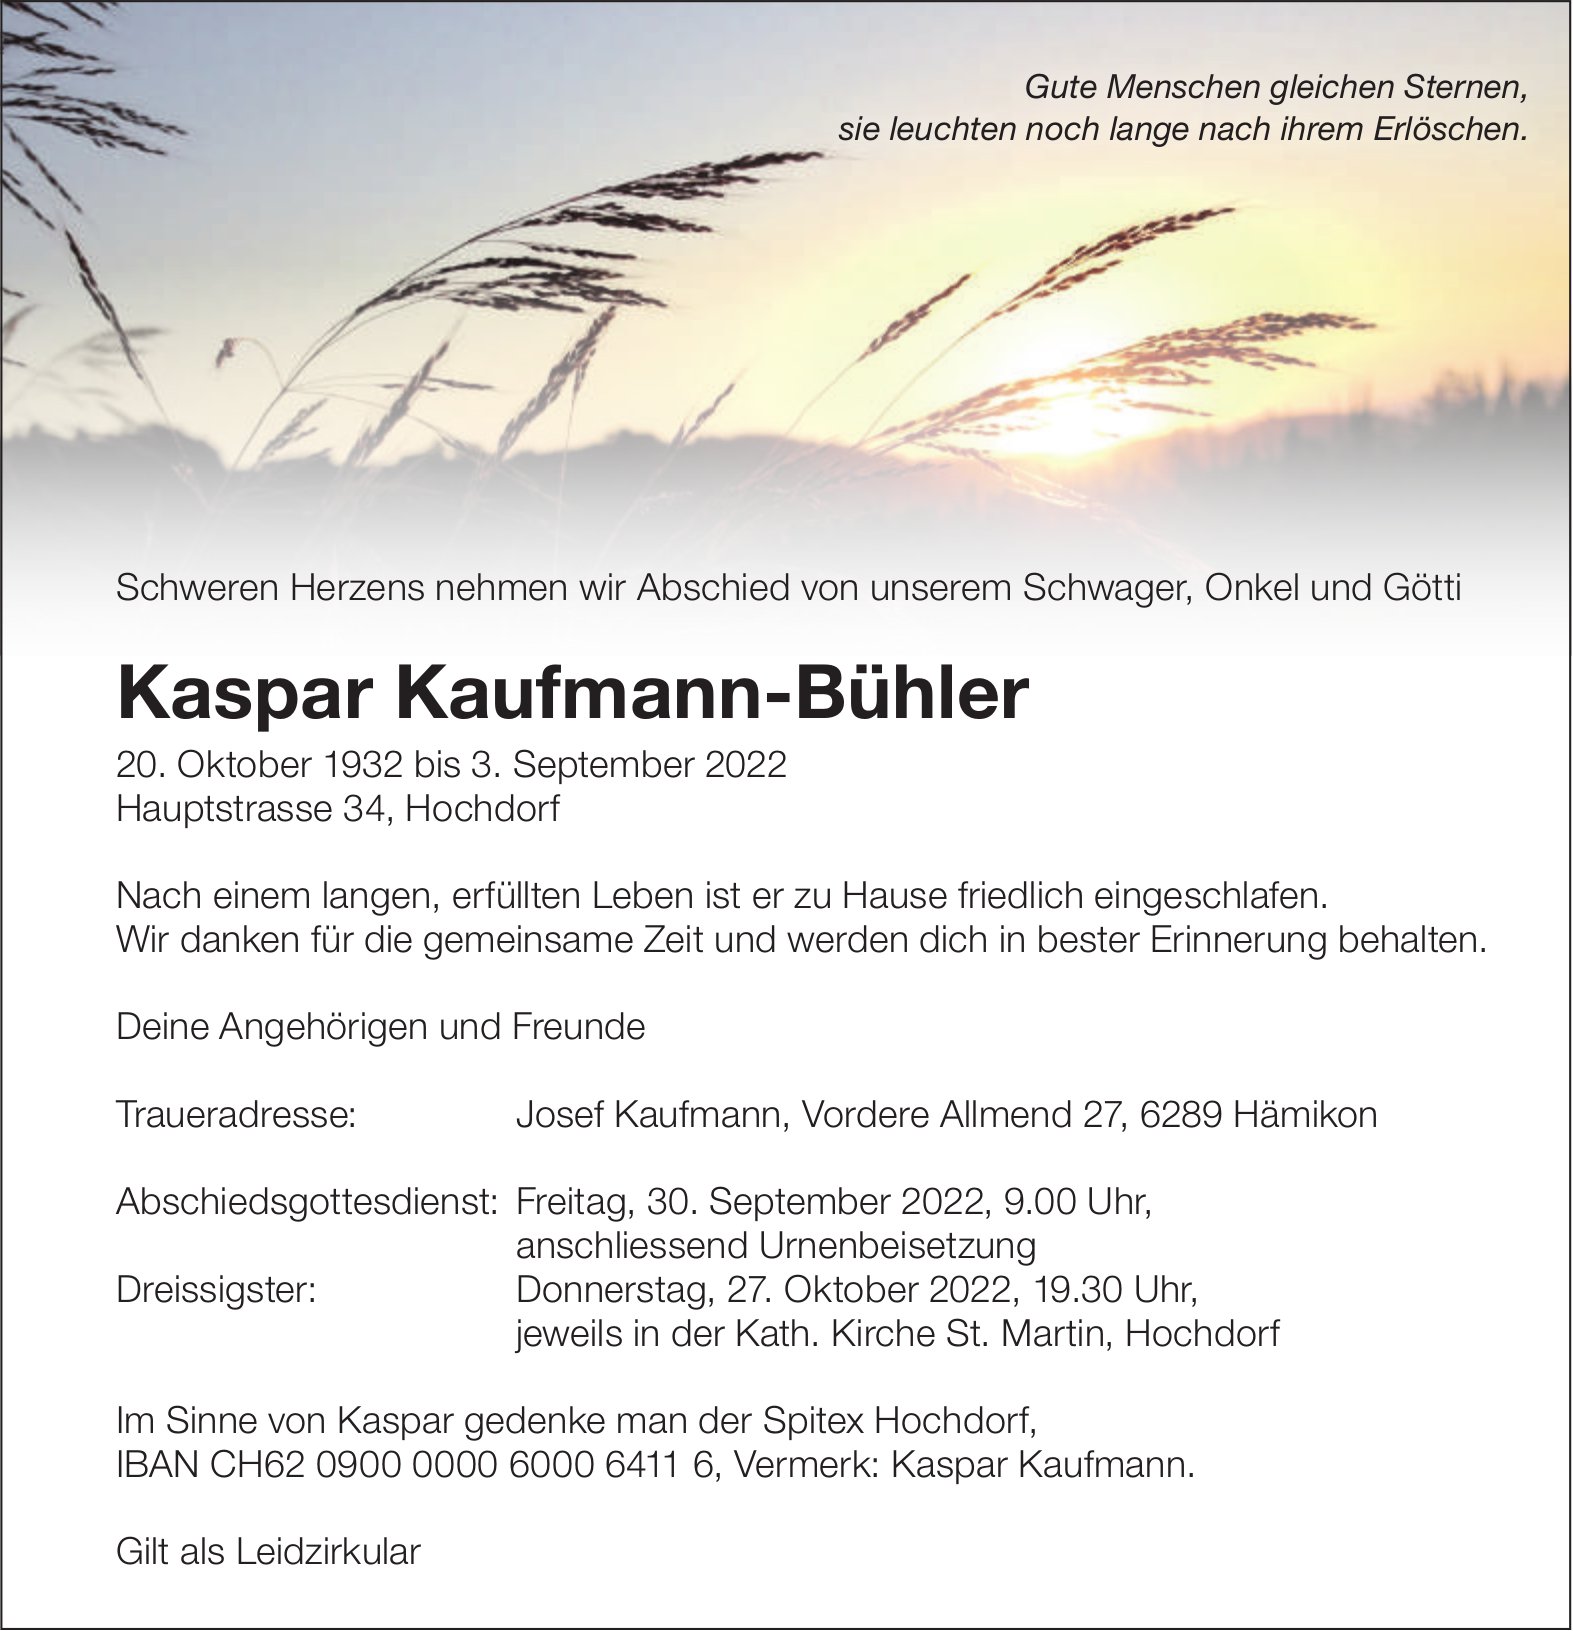 Kaufmann-Bühler Kaspar, September 2022 / TA